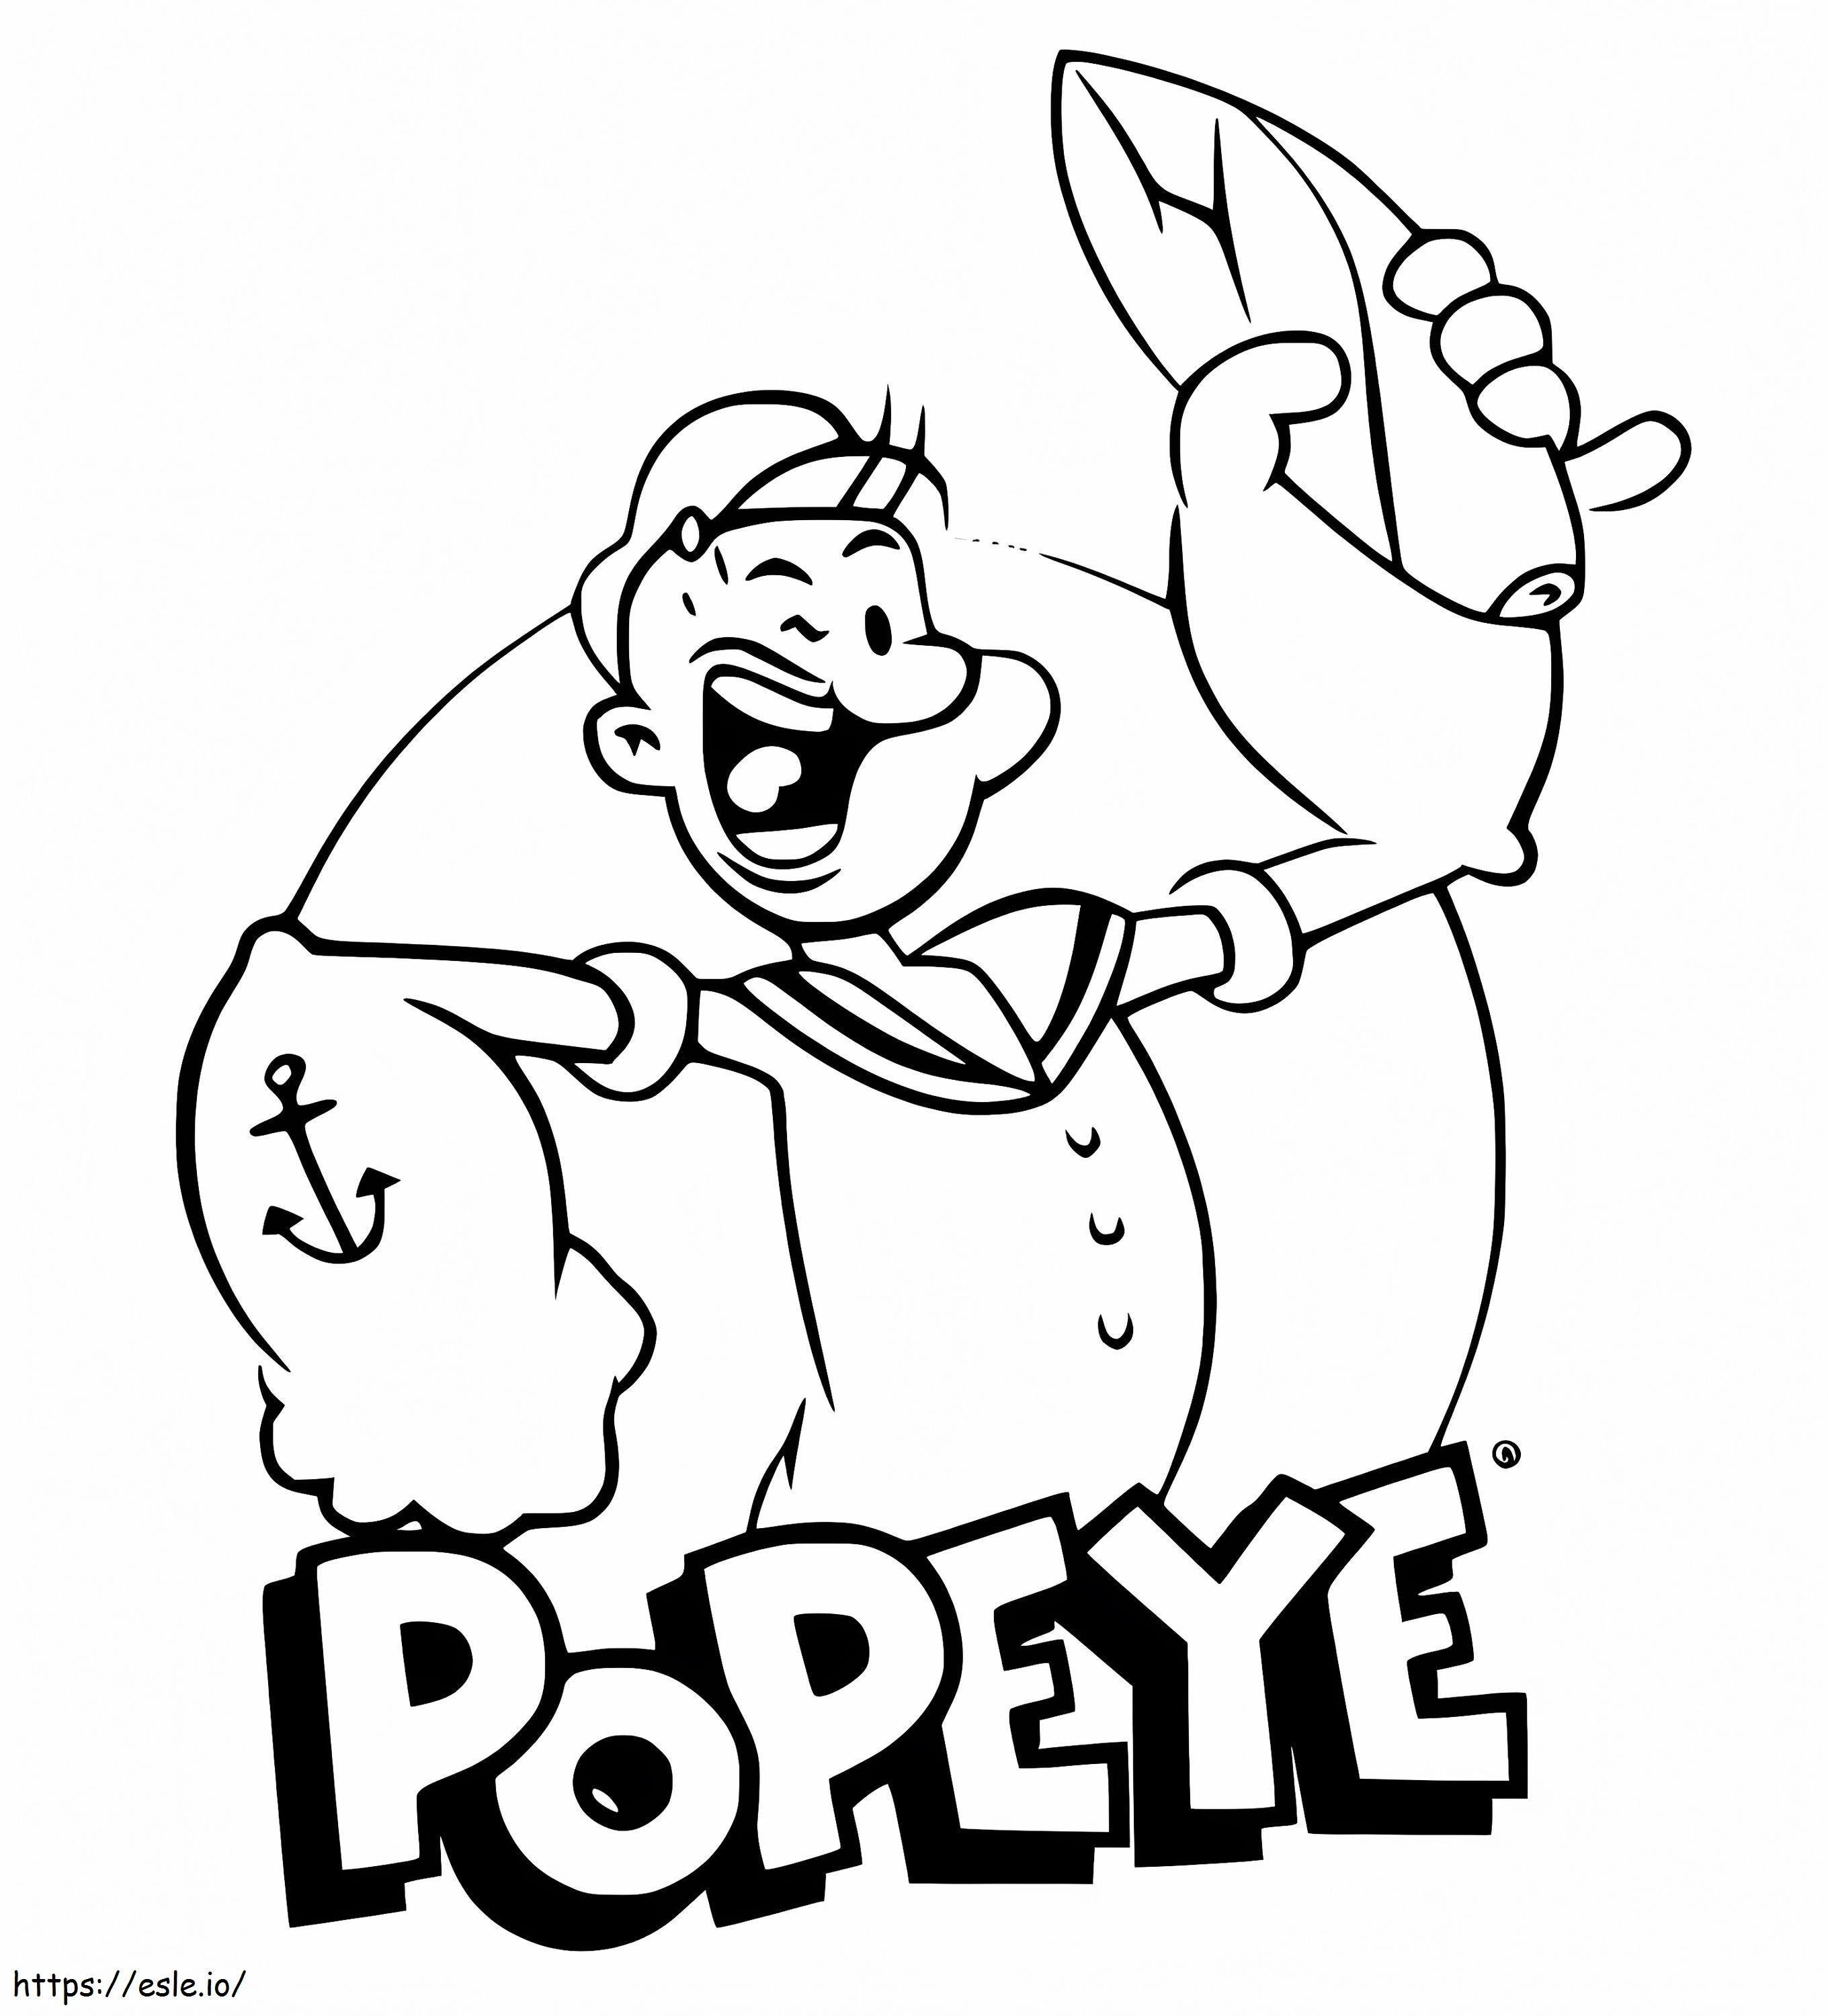 Popeye nauraa värityskuva